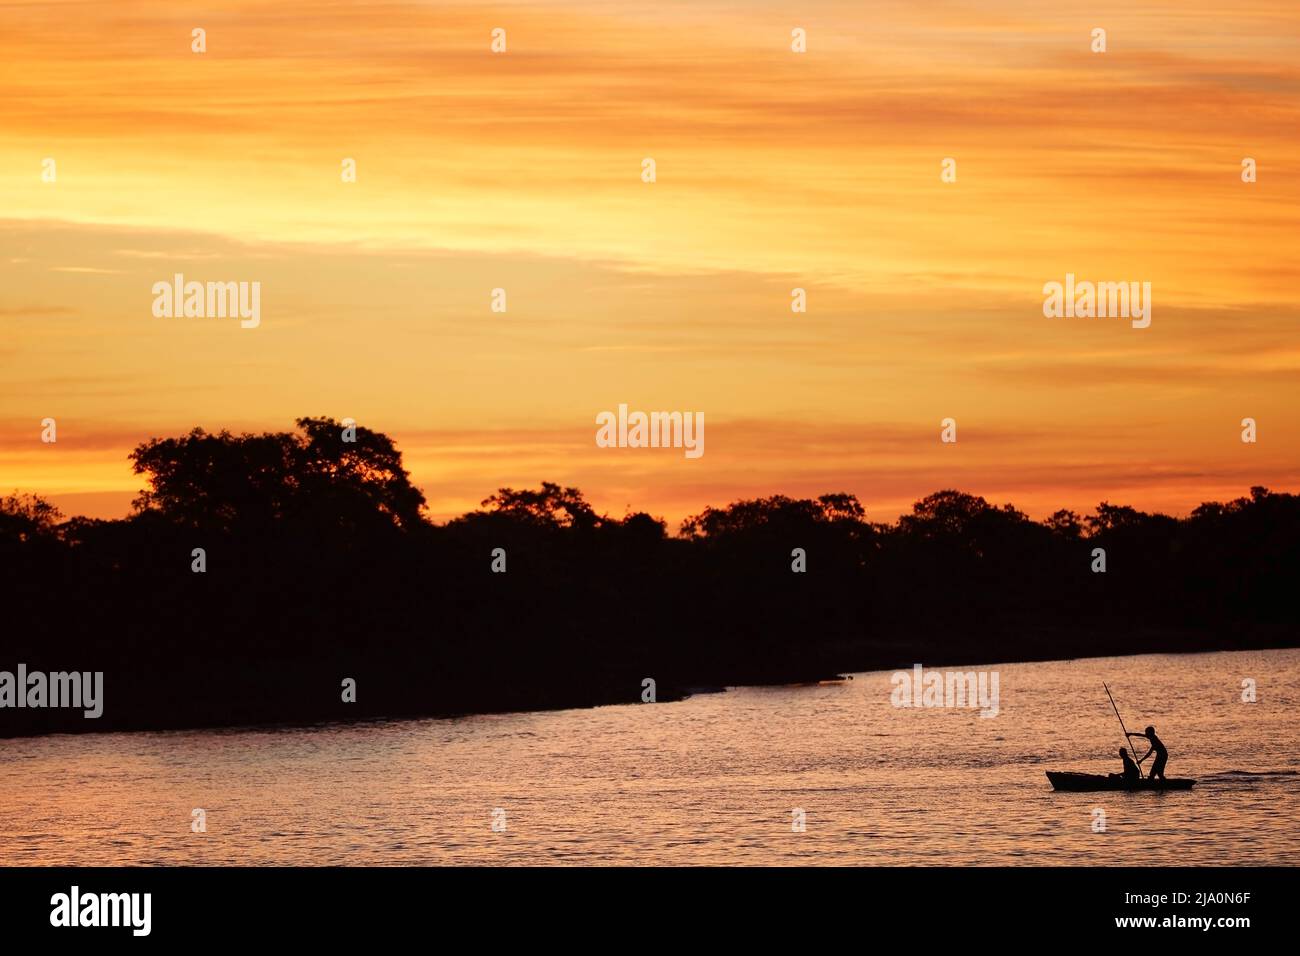 Silhouette de pêcheurs sur un petit bateau en bois sur la rivière Parana au crépuscule, Esquina, province de Corrientes, Argentine. Banque D'Images